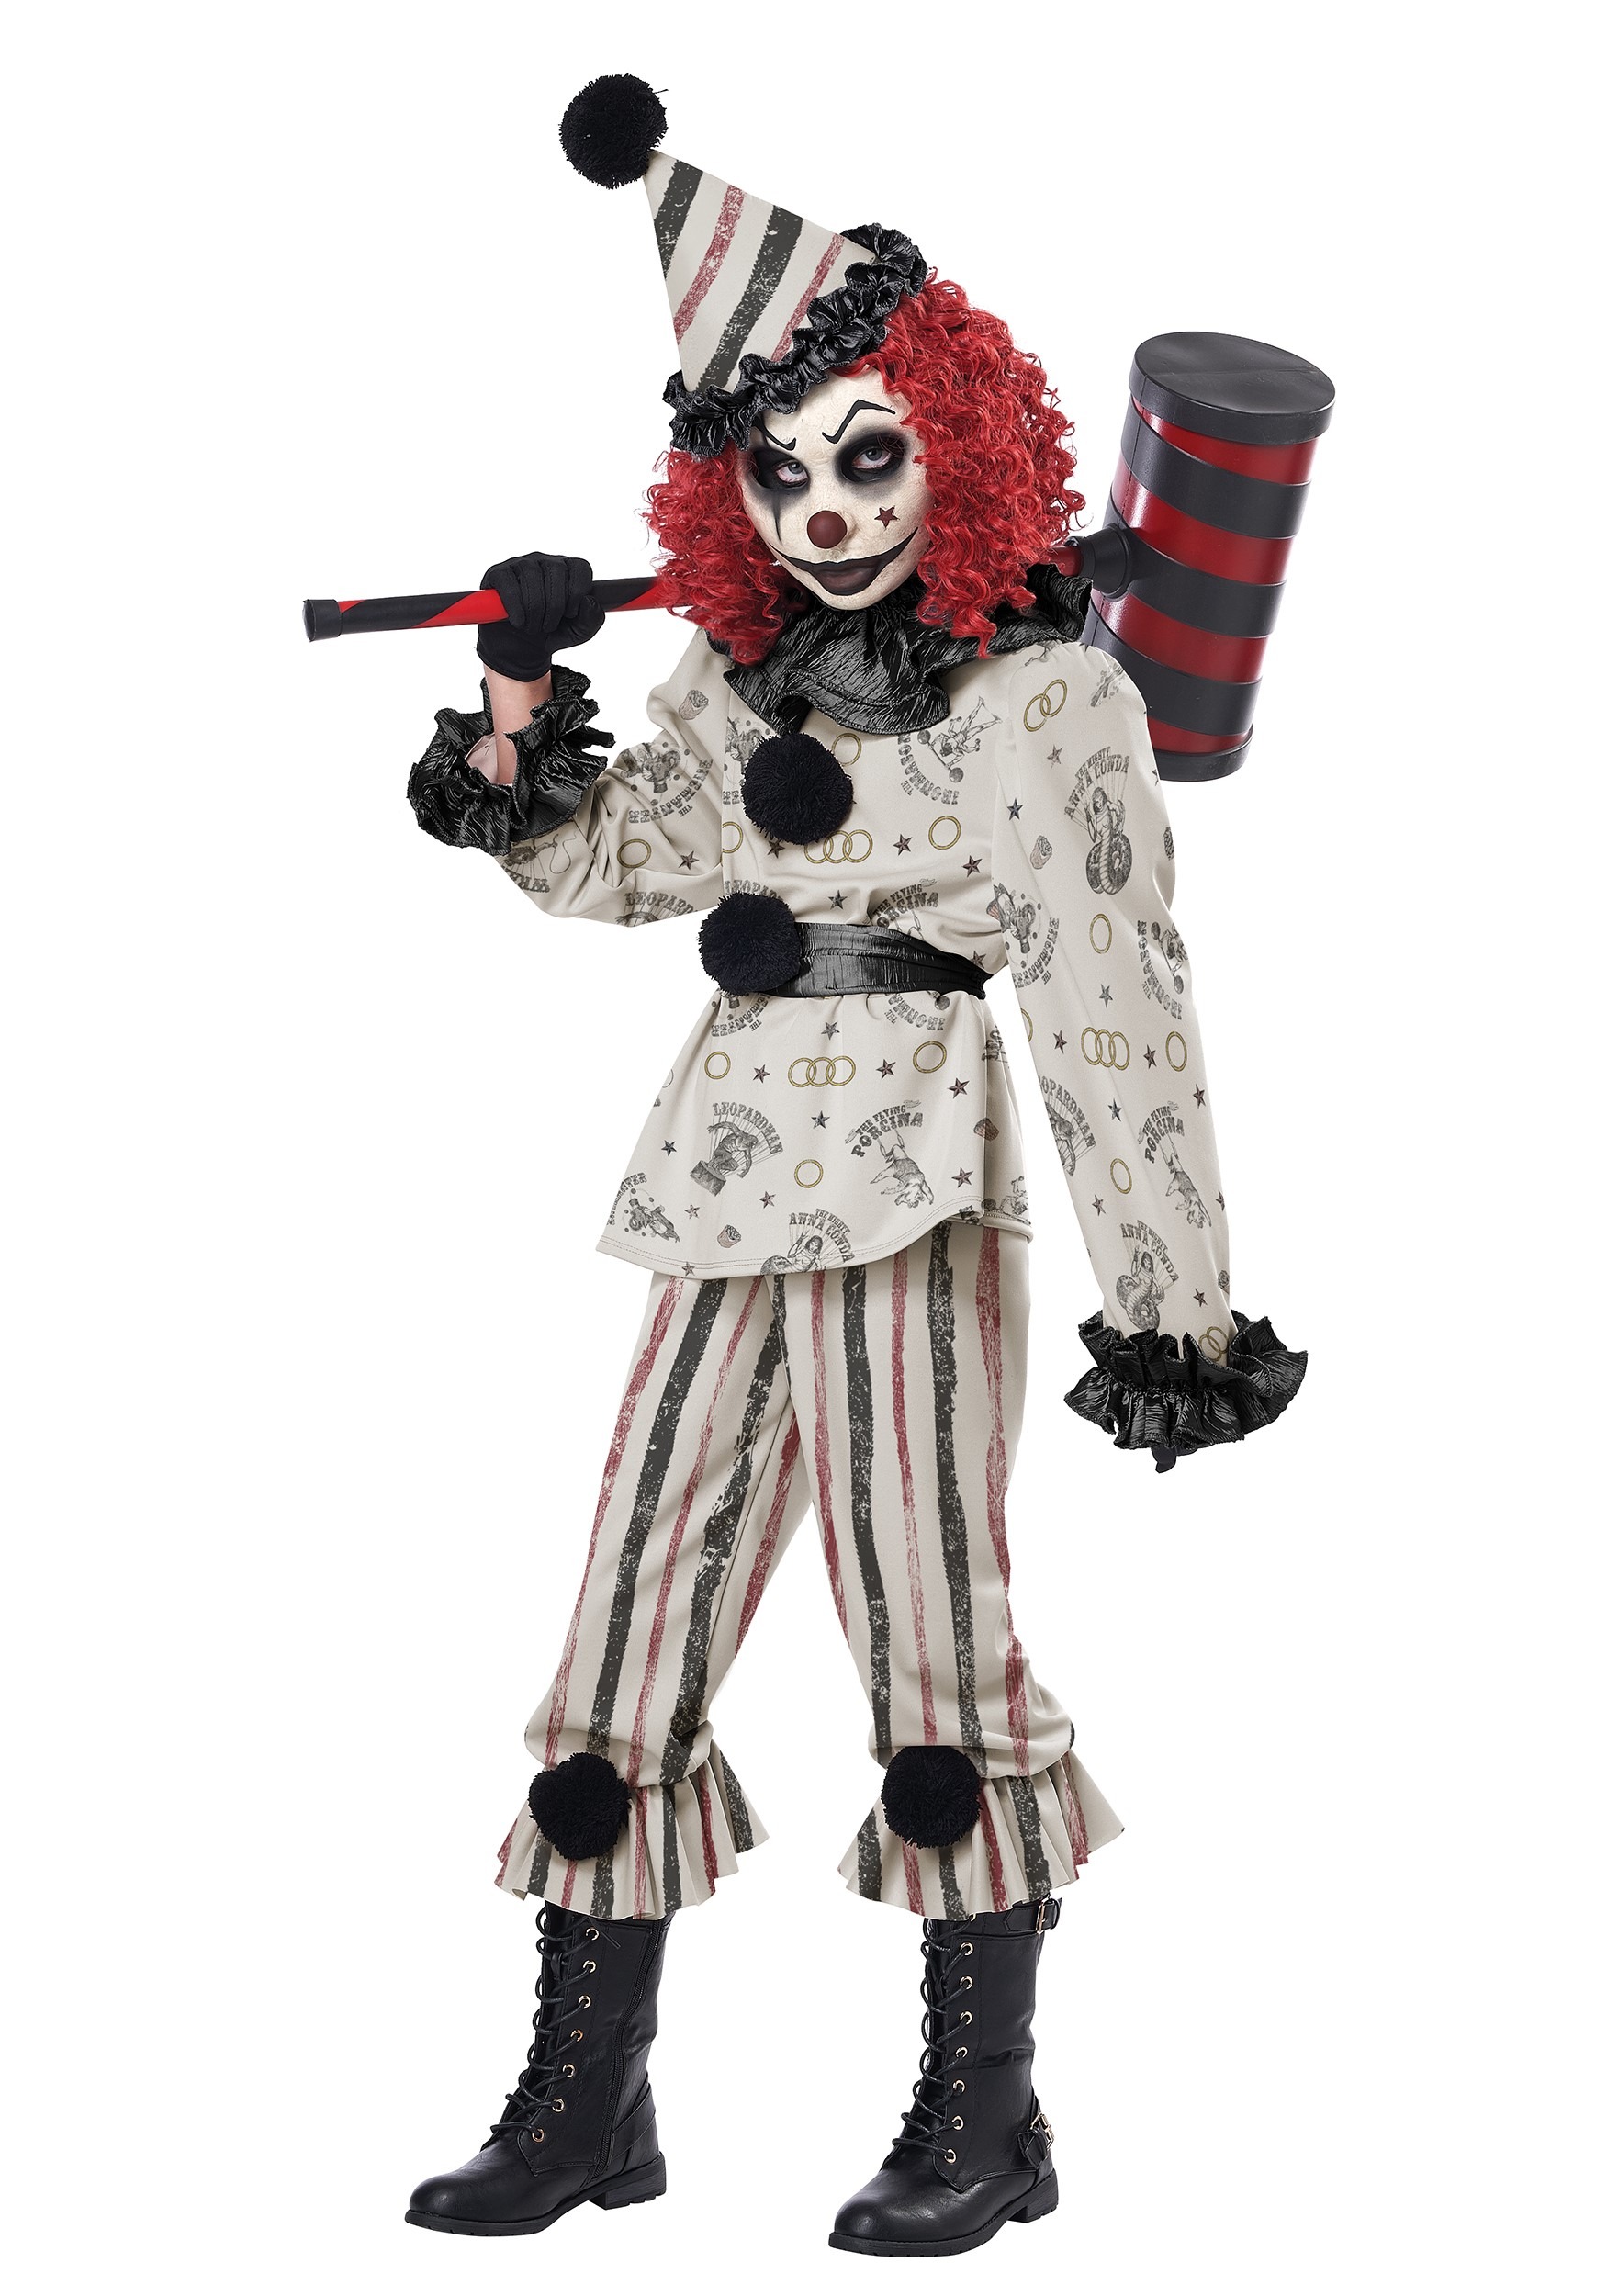 Creeper Clown Child's Costume